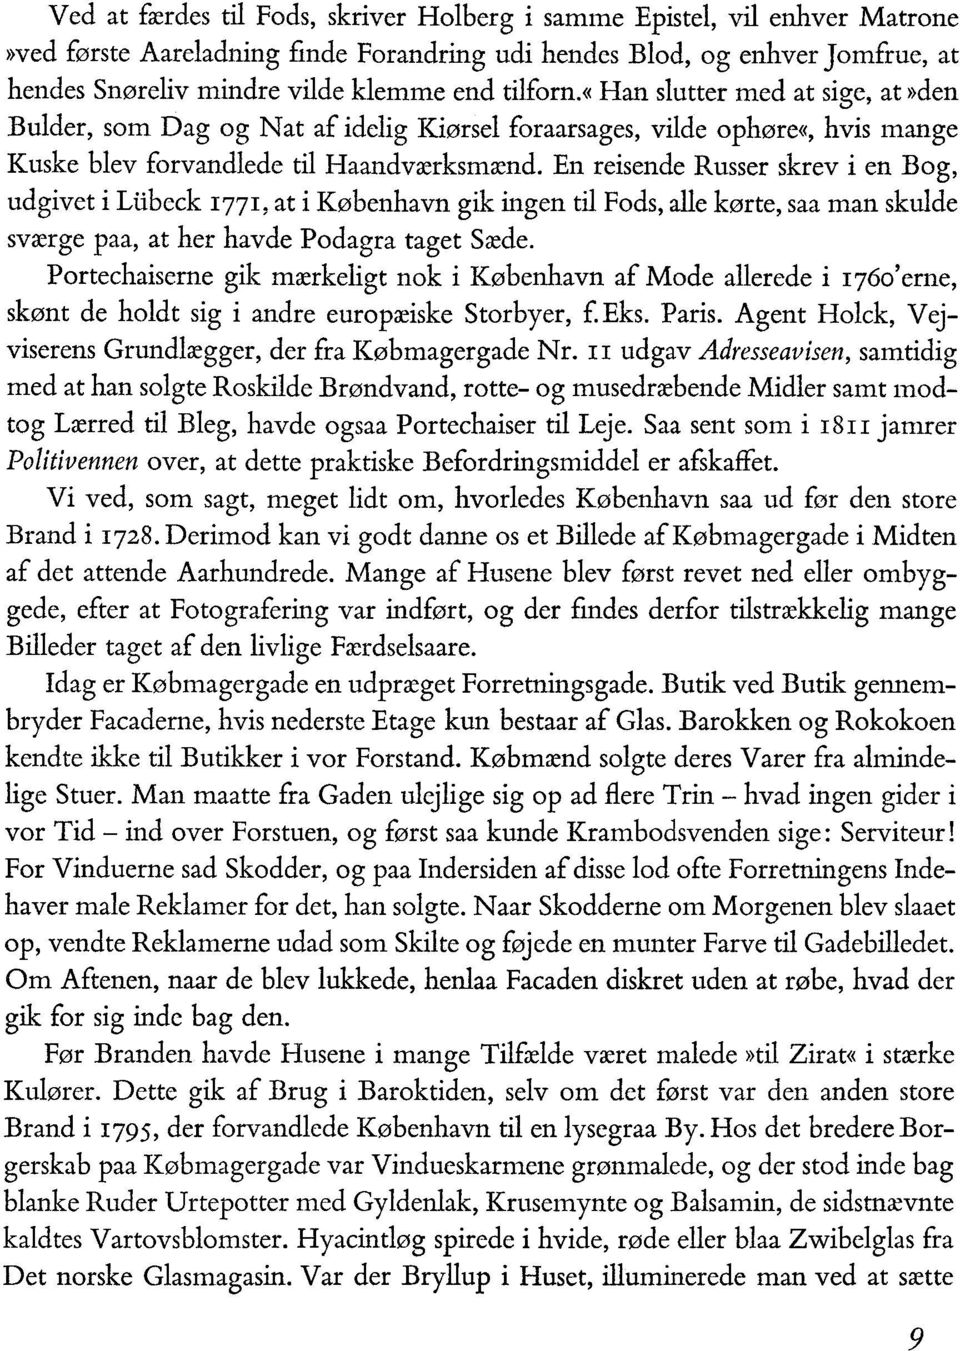 En reisende Russer skrev i en Bog, udgivet i Liibeck 1771, at i København gik ingen til Fods, alle kørte, saa man skulde sværge paa, at her havde Podagra taget Sæde.